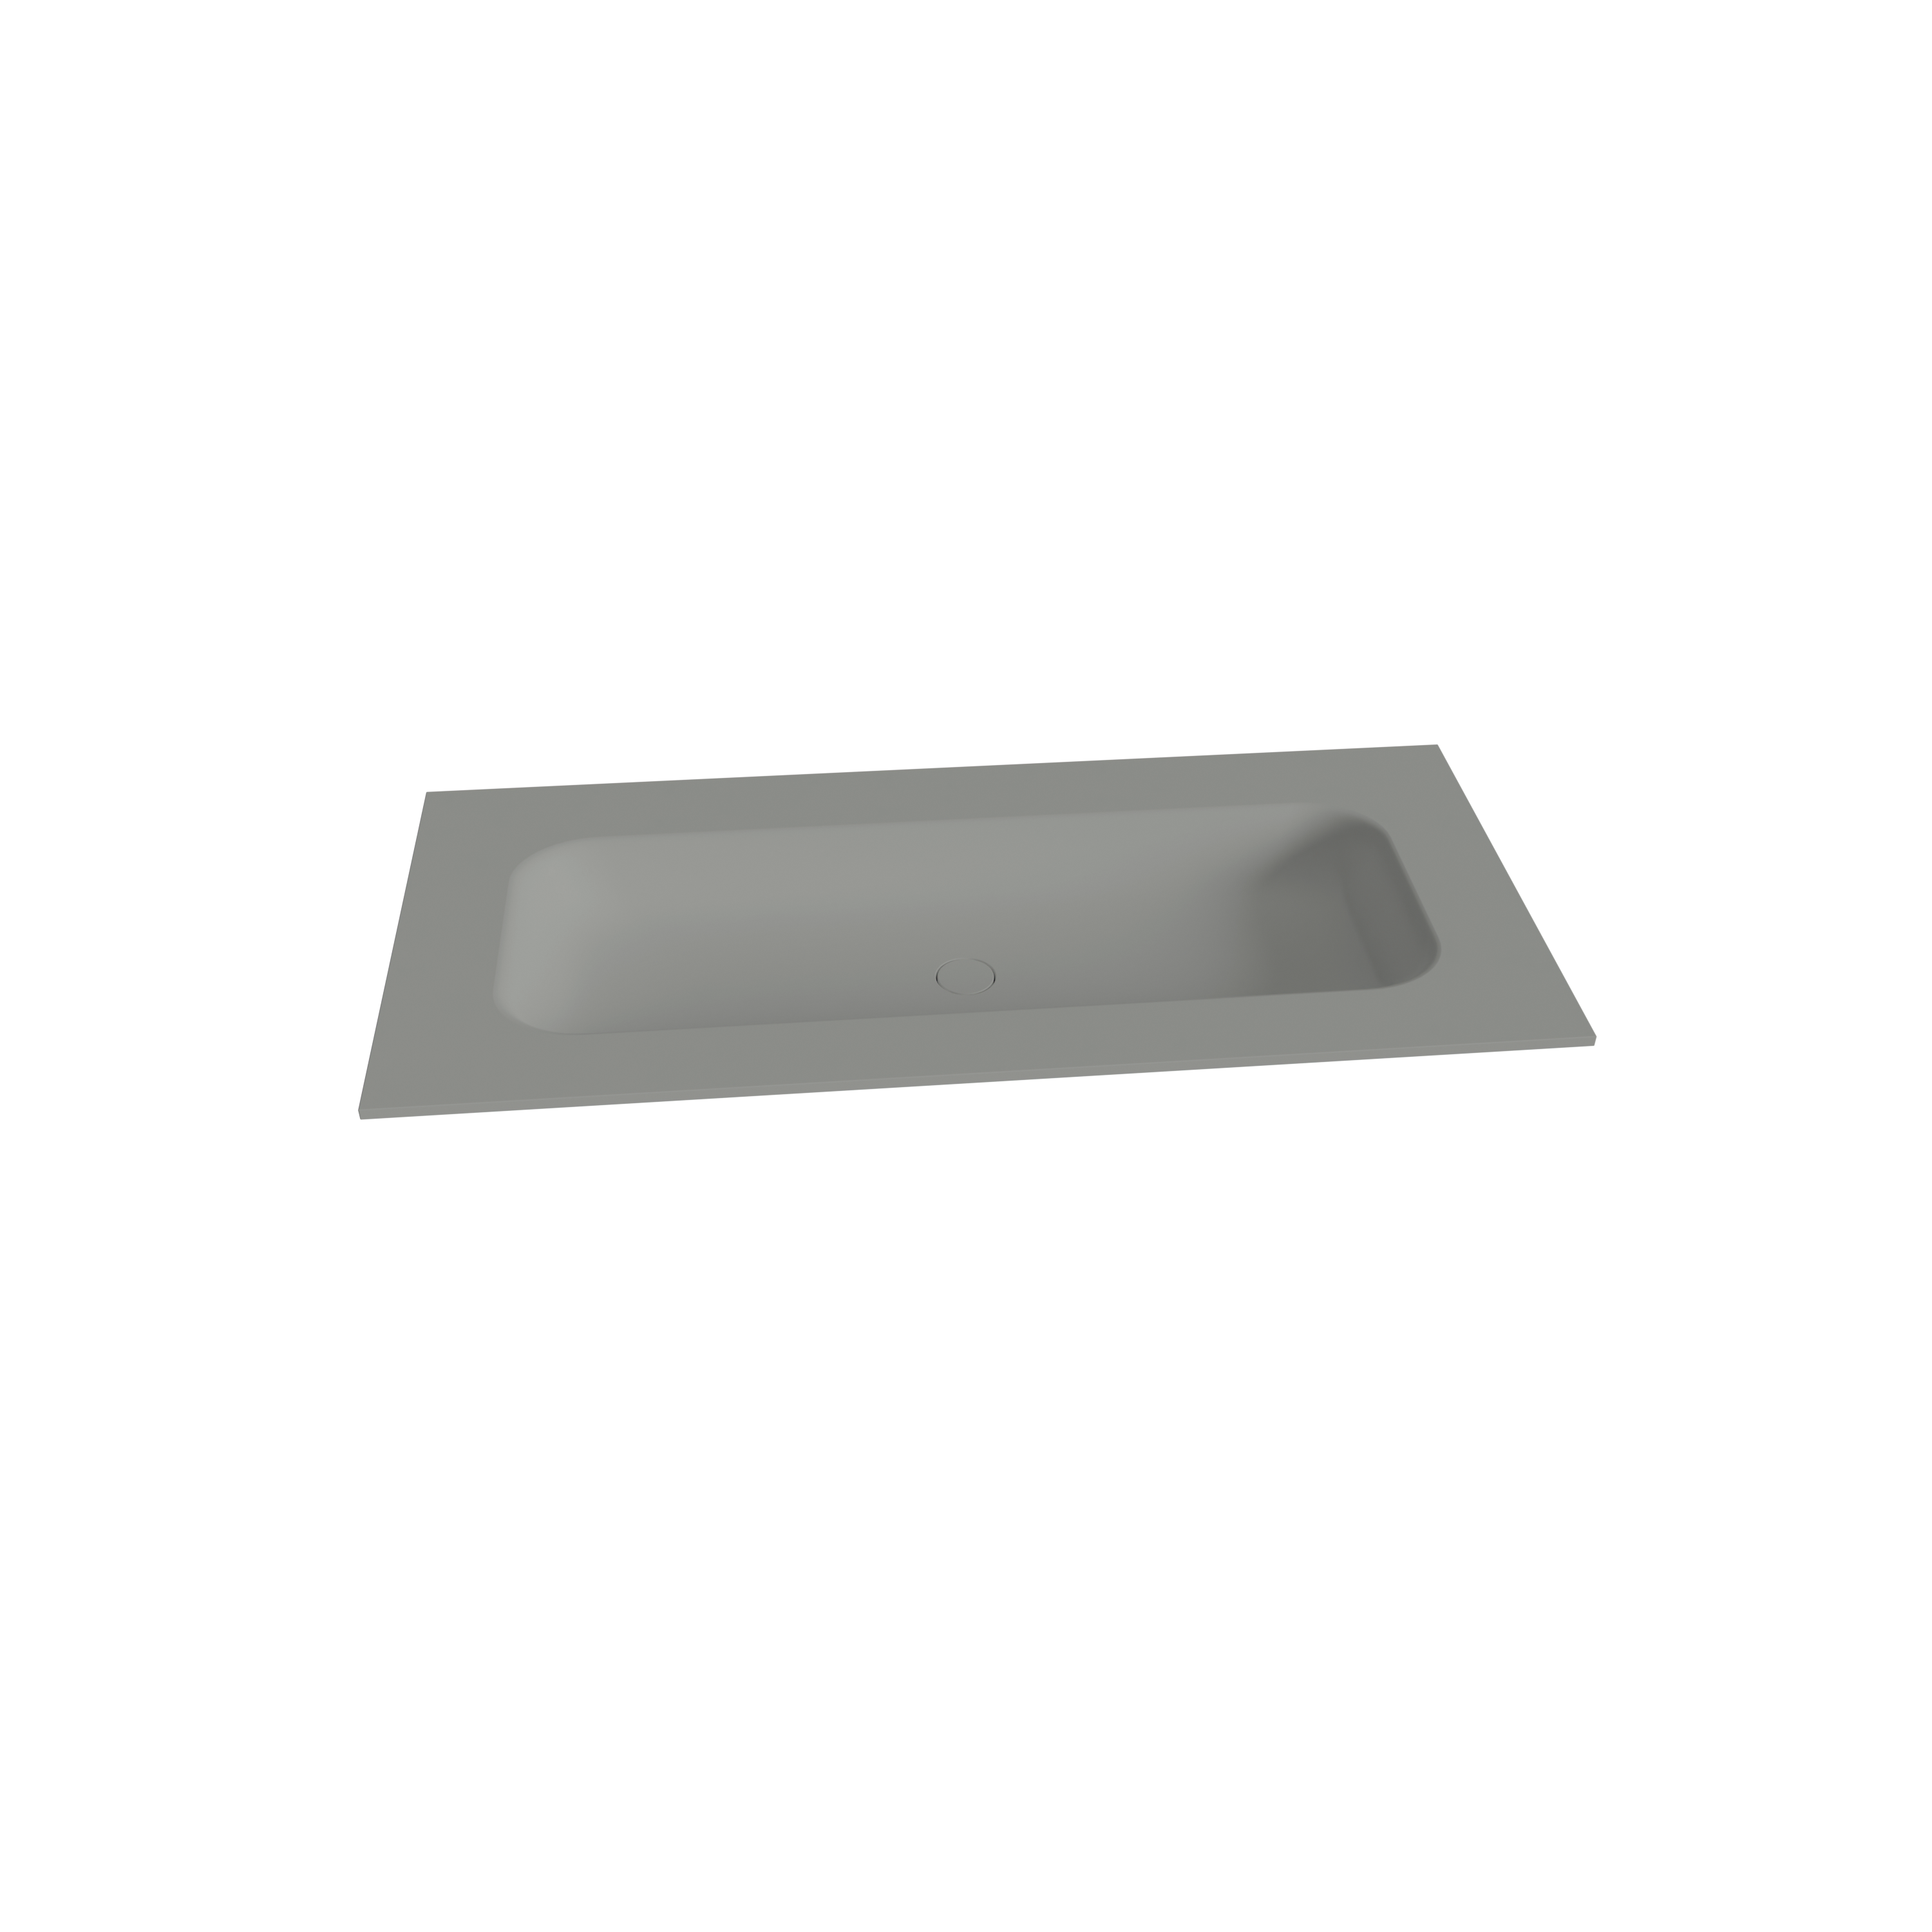 Balmani Balmani Tablo Arcato enkele wastafel voor 2 kraangaten met afvoerplug mat steengrijze Solid Surface 120 x 55 cm